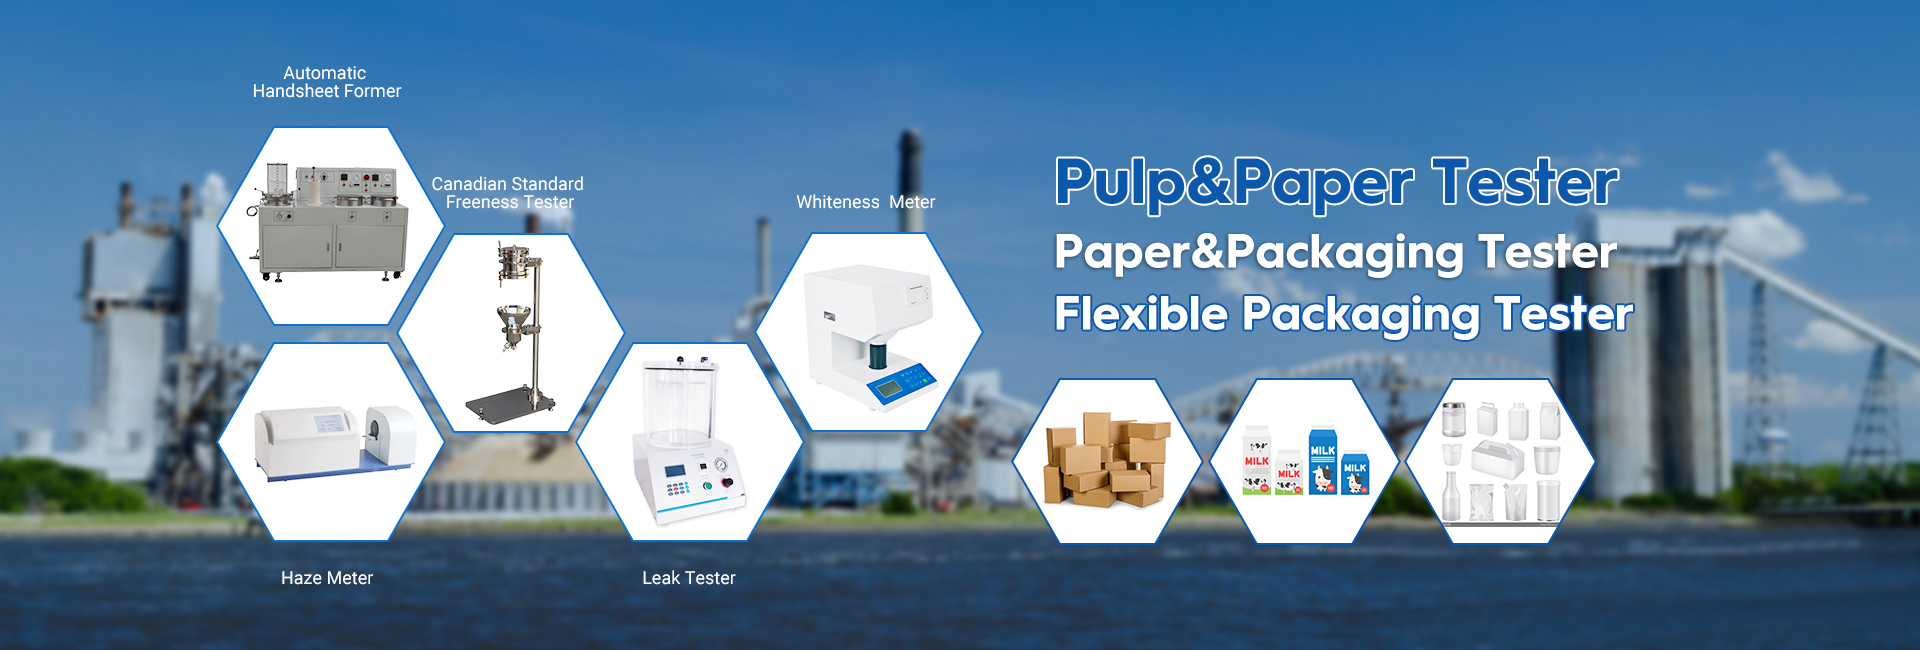 Prüfinstrumente für Papier und flexible Verpackungen